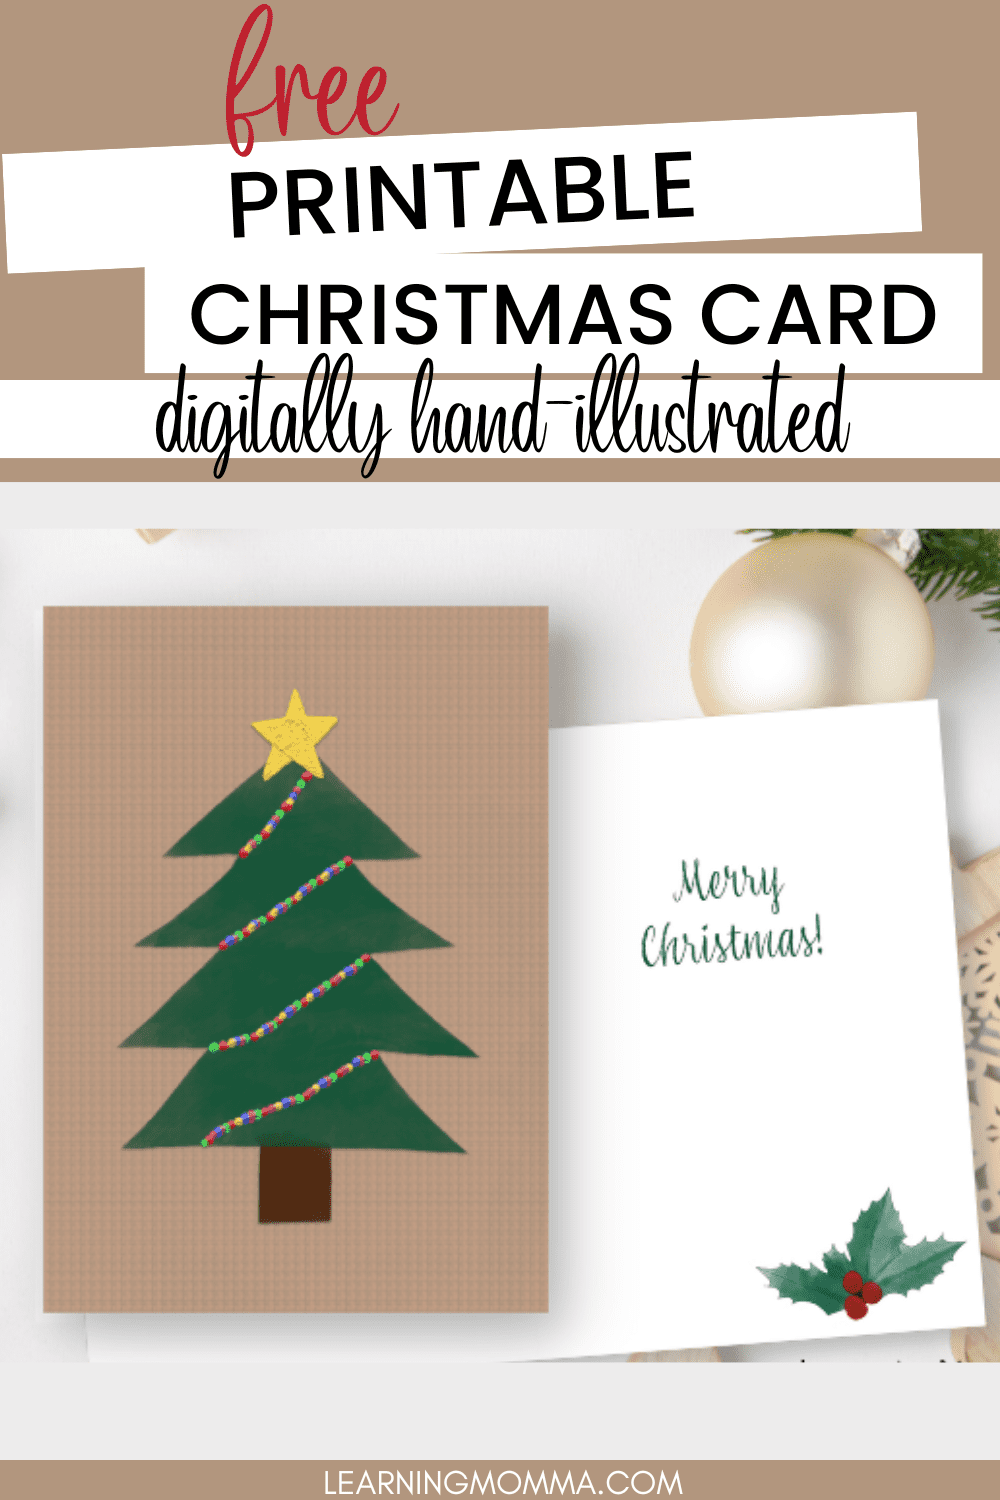 free-printable-christmas-card-with-christmas-tree-holly